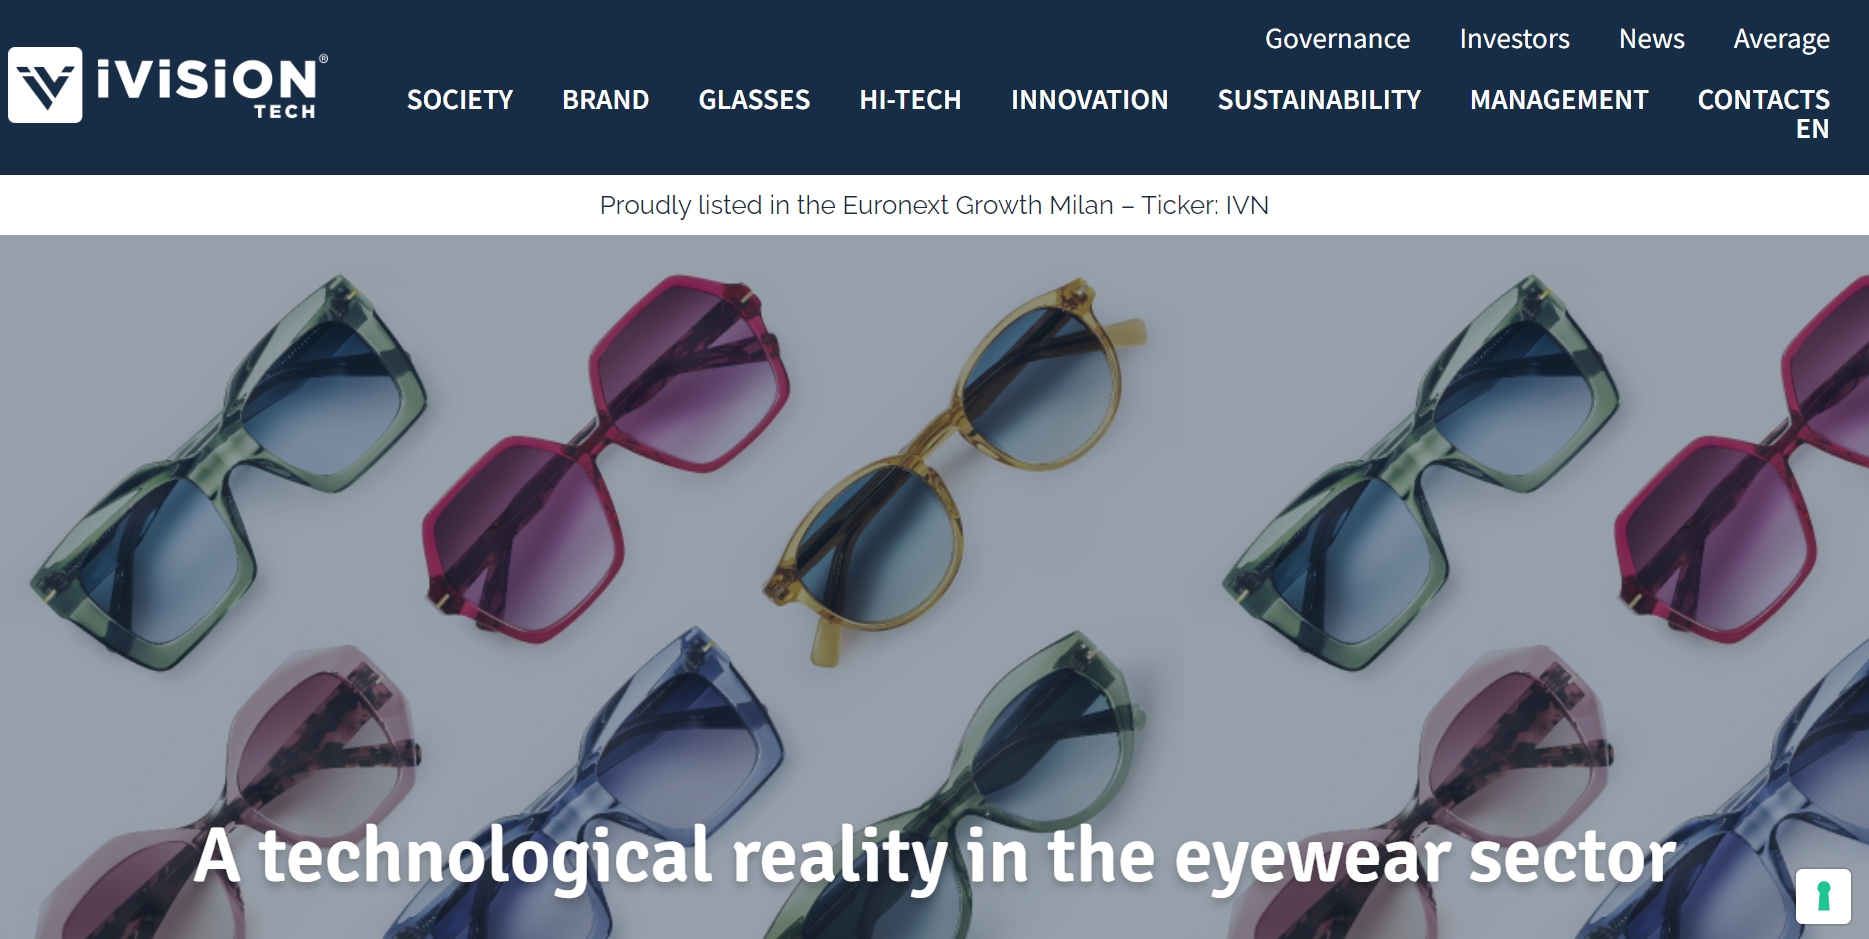 欧洲眼镜生产商 iVision Tech 发行500万欧元迷你债券以支持增长